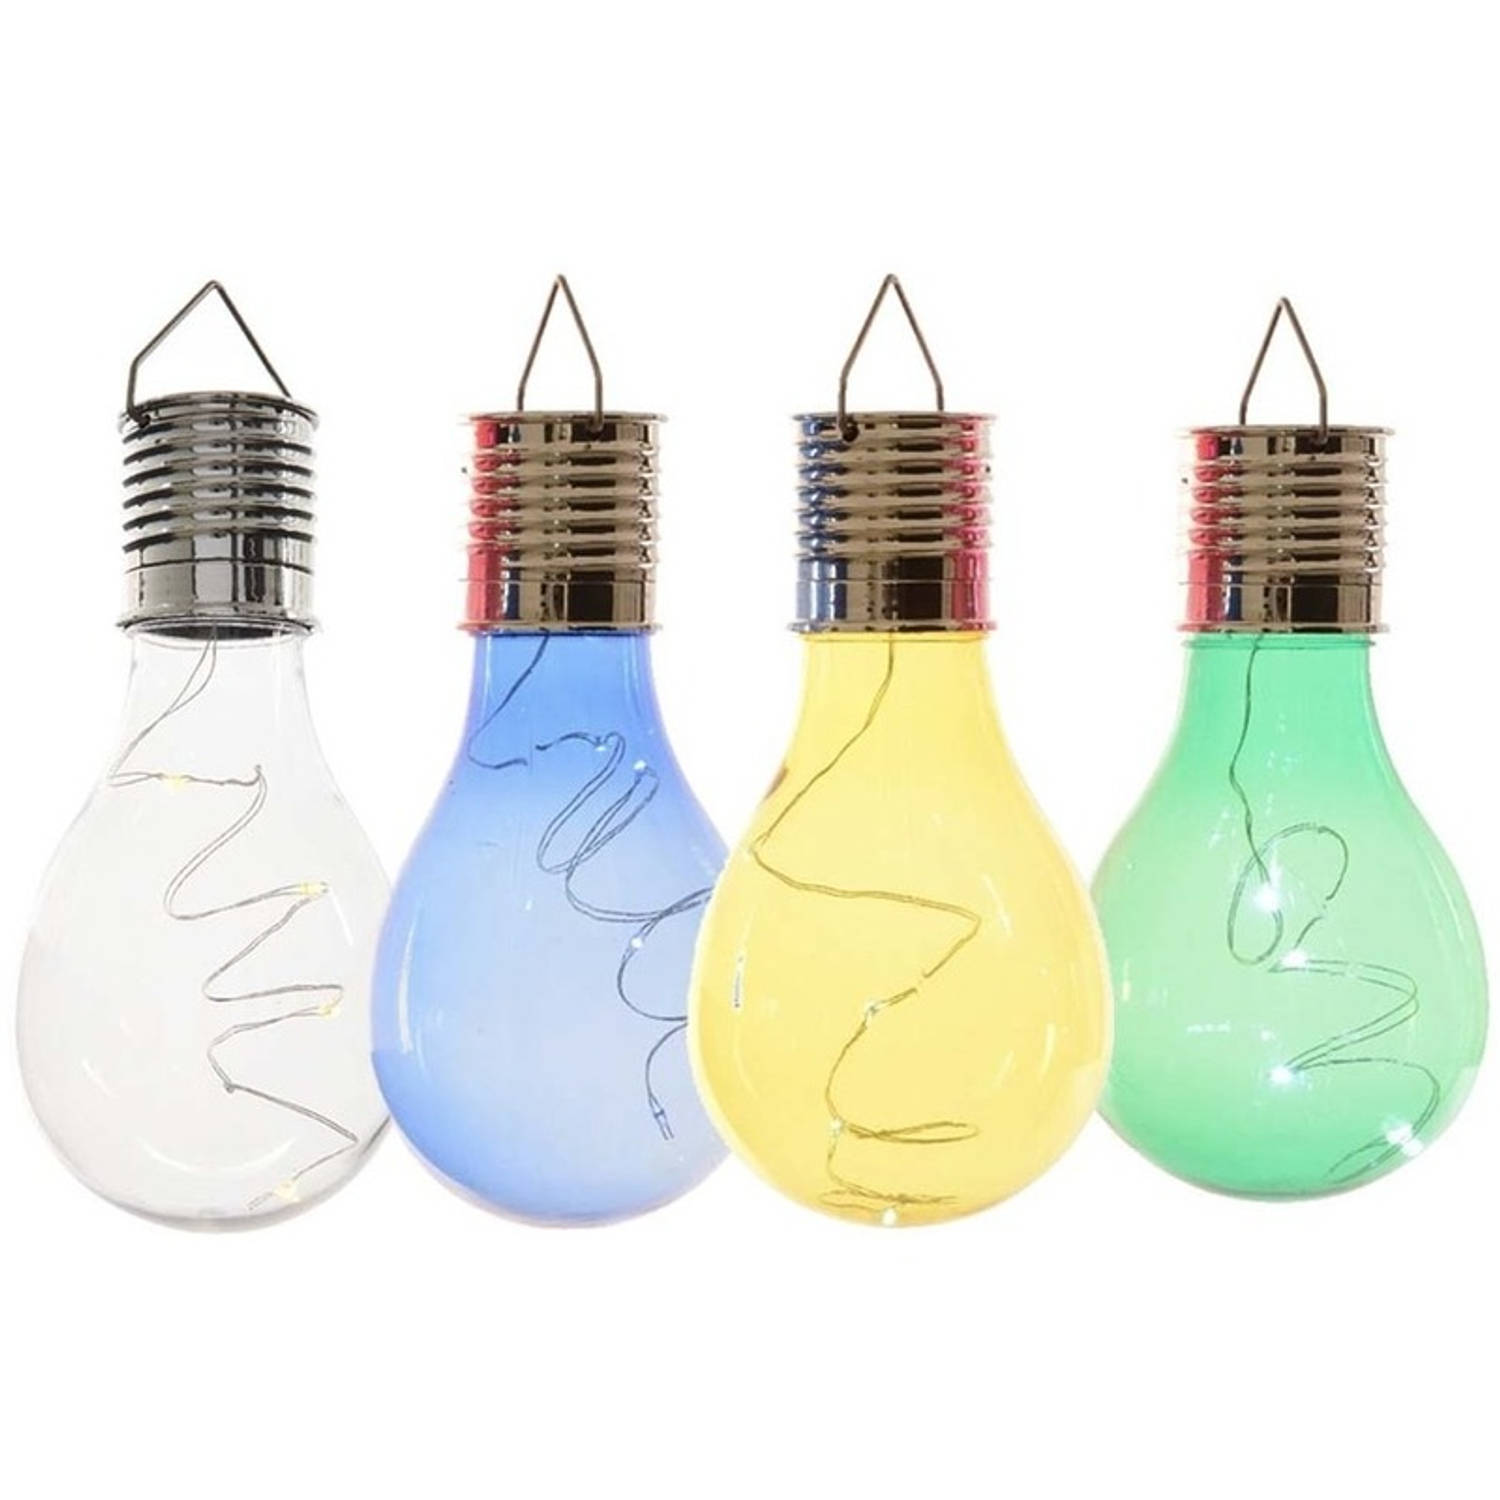 4x Buitenlampen/tuinlampen lampbolletjes/peertjes 14 cm transparant/blauw/groen/geel - Buitenverlichting